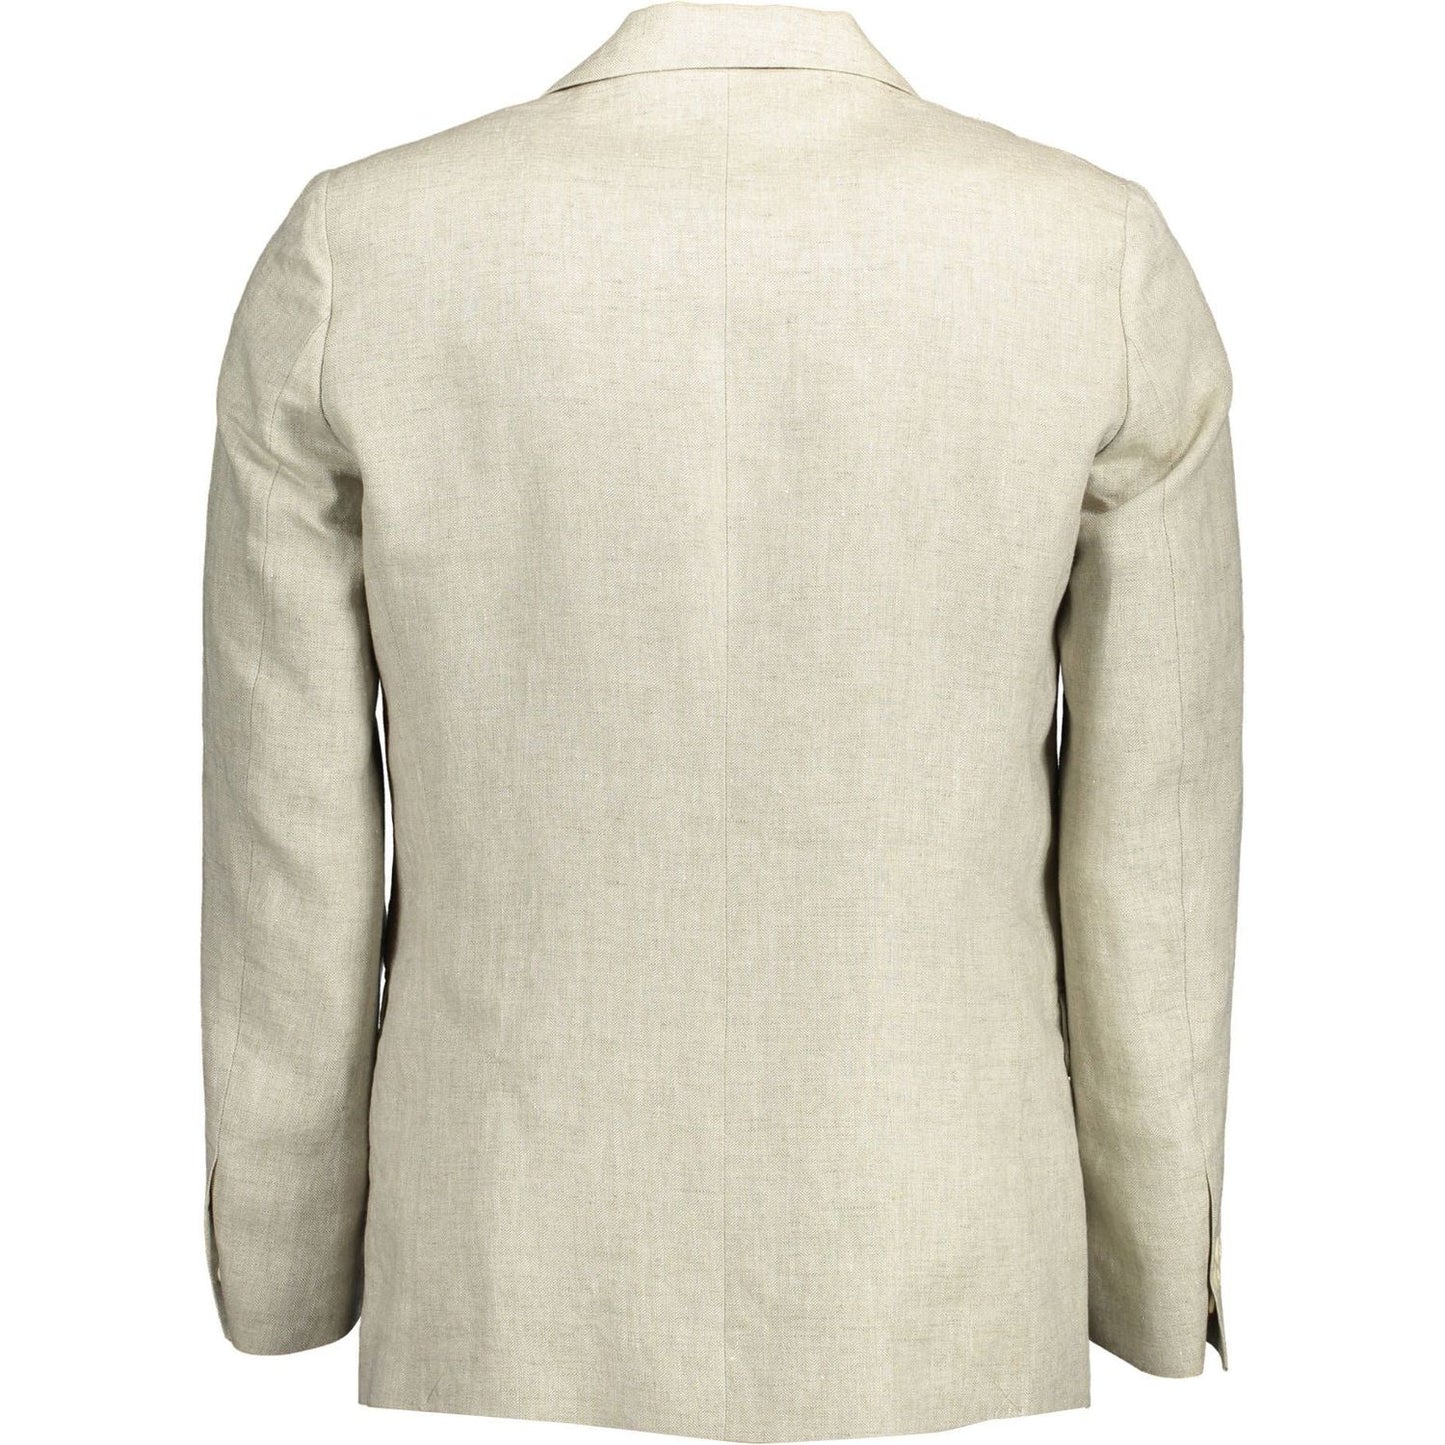 GantBeige Linen Classic Jacket with LogoMcRichard Designer Brands£199.00